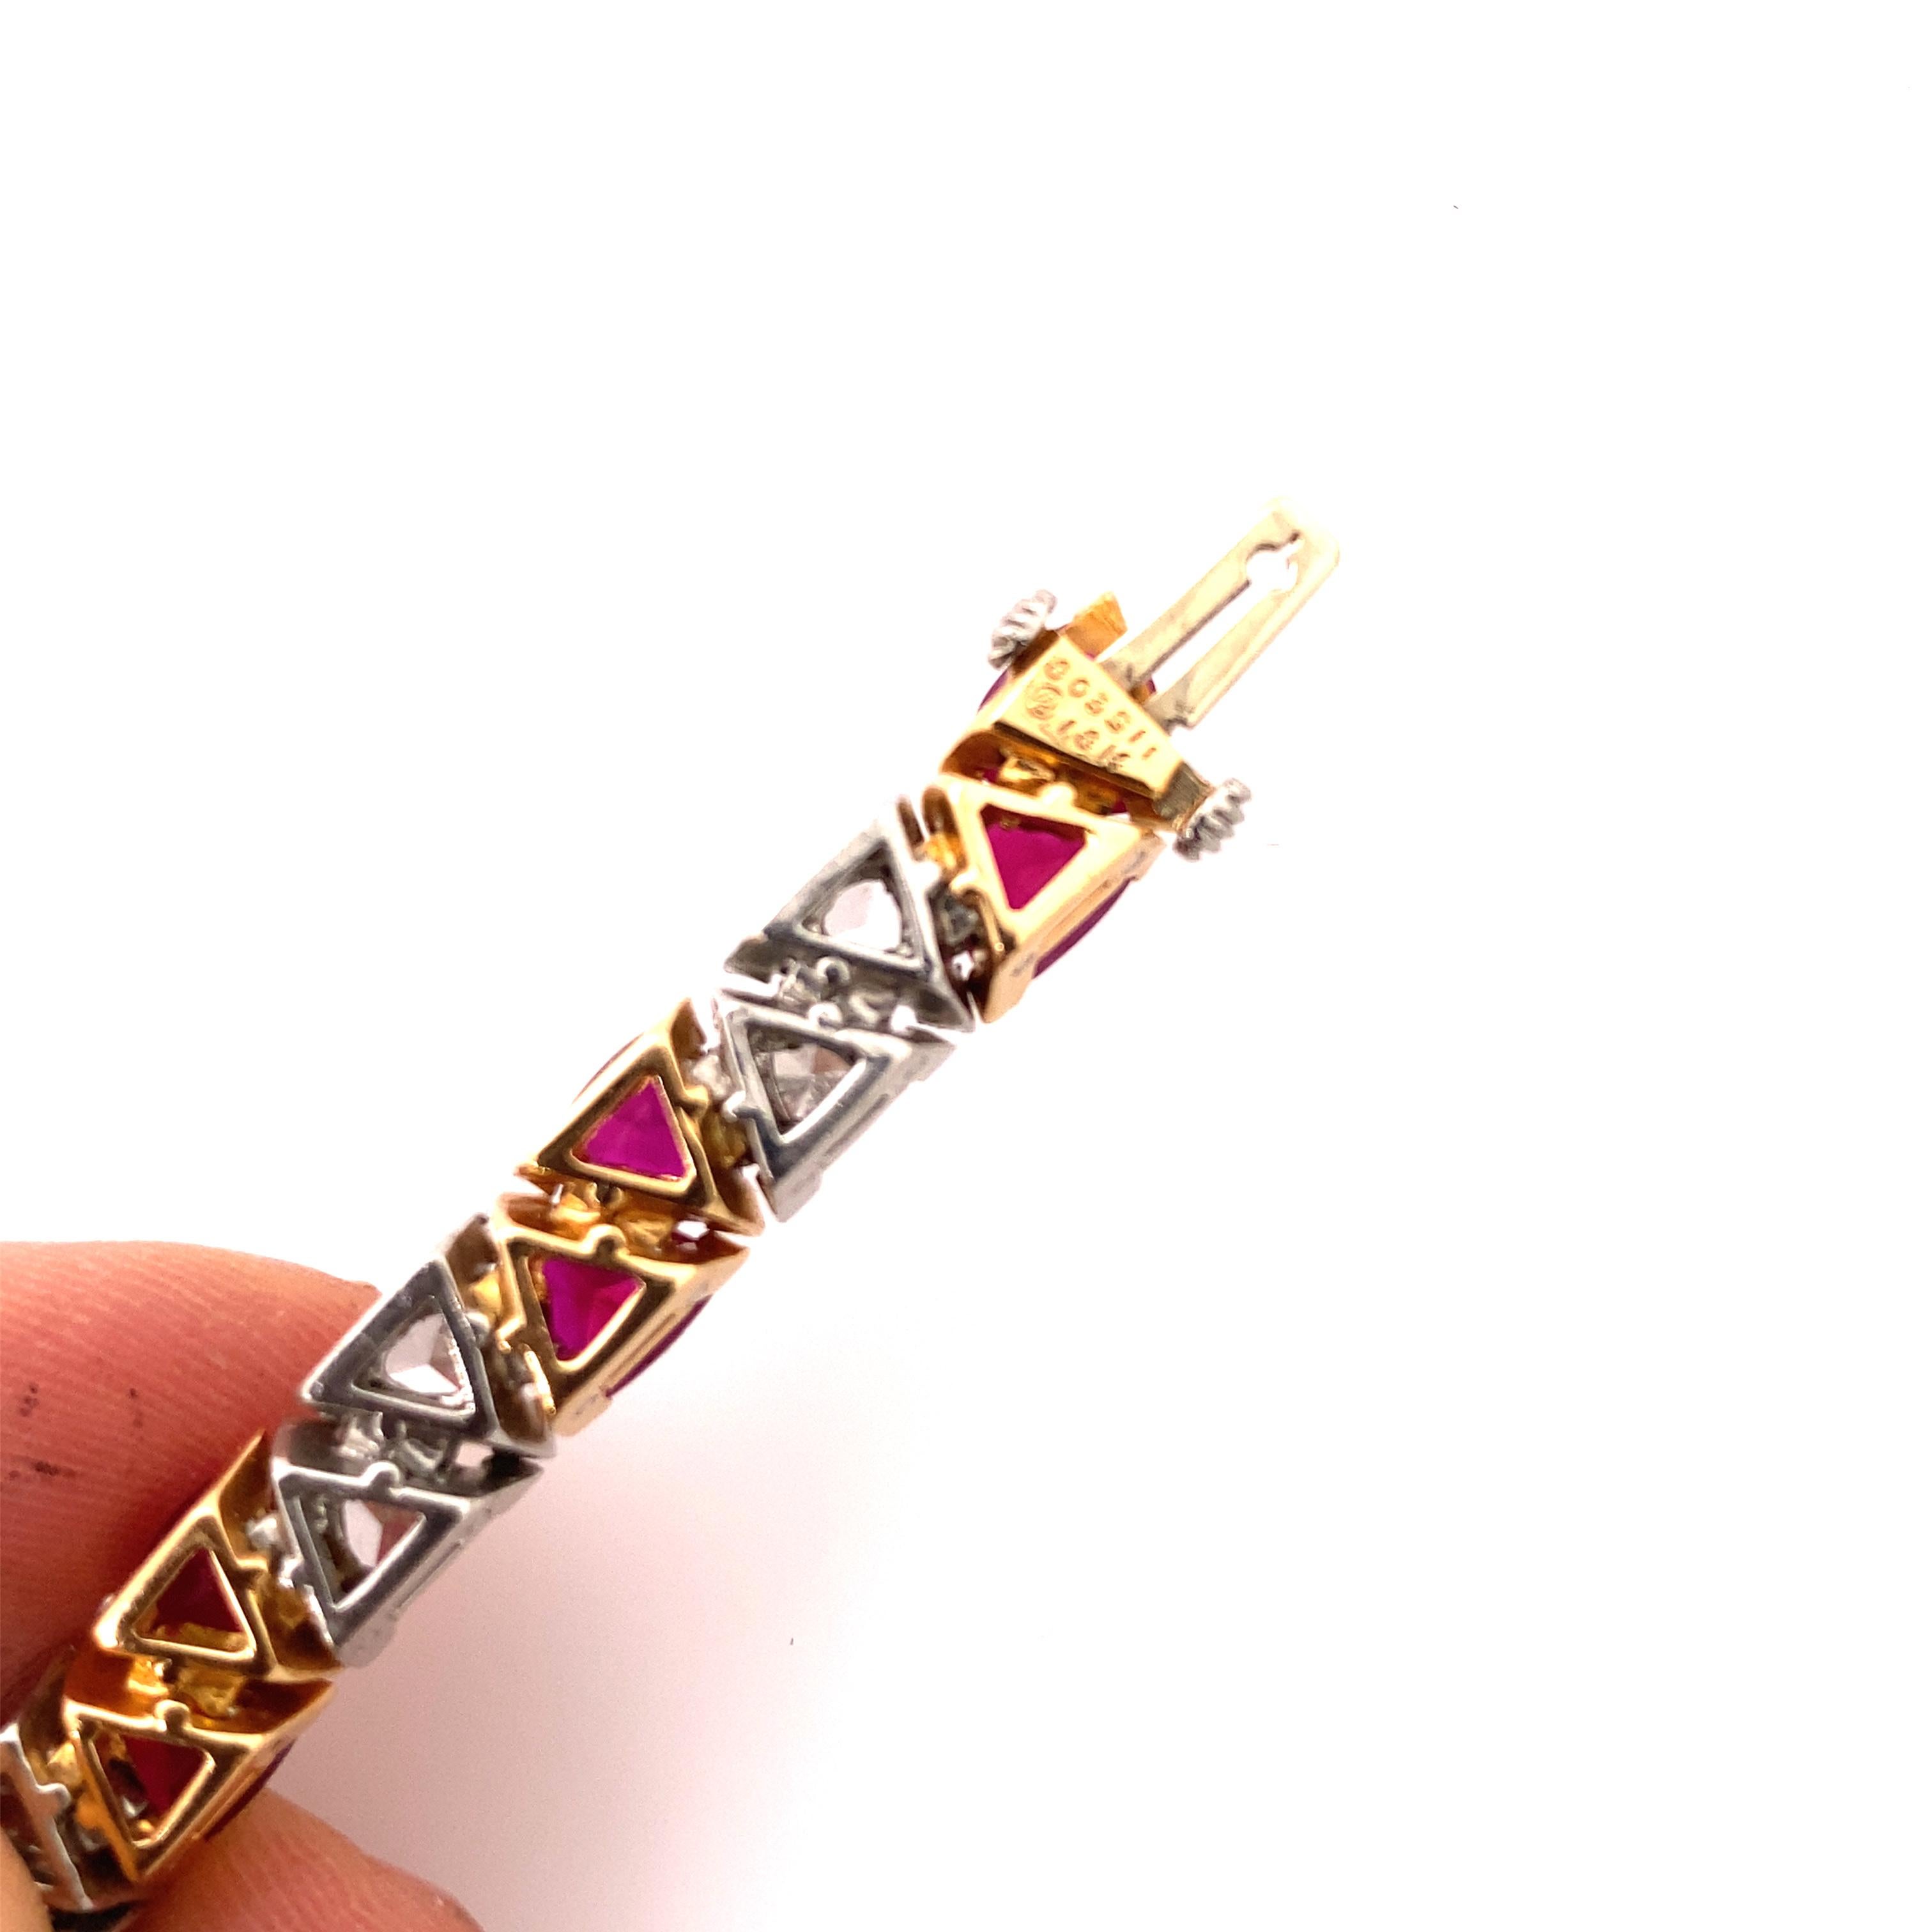 Atemberaubendes Oscar Heyman Armband mit 22 dreieckigen Rubinen mit insgesamt 15,47cts, akzentuiert durch 22 Diamanten im Billionenschliff mit insgesamt 7,61cts, alle in einer handmontierten 3-Zacken-Fassung in einer einzigen Reihe abwechselnd 2